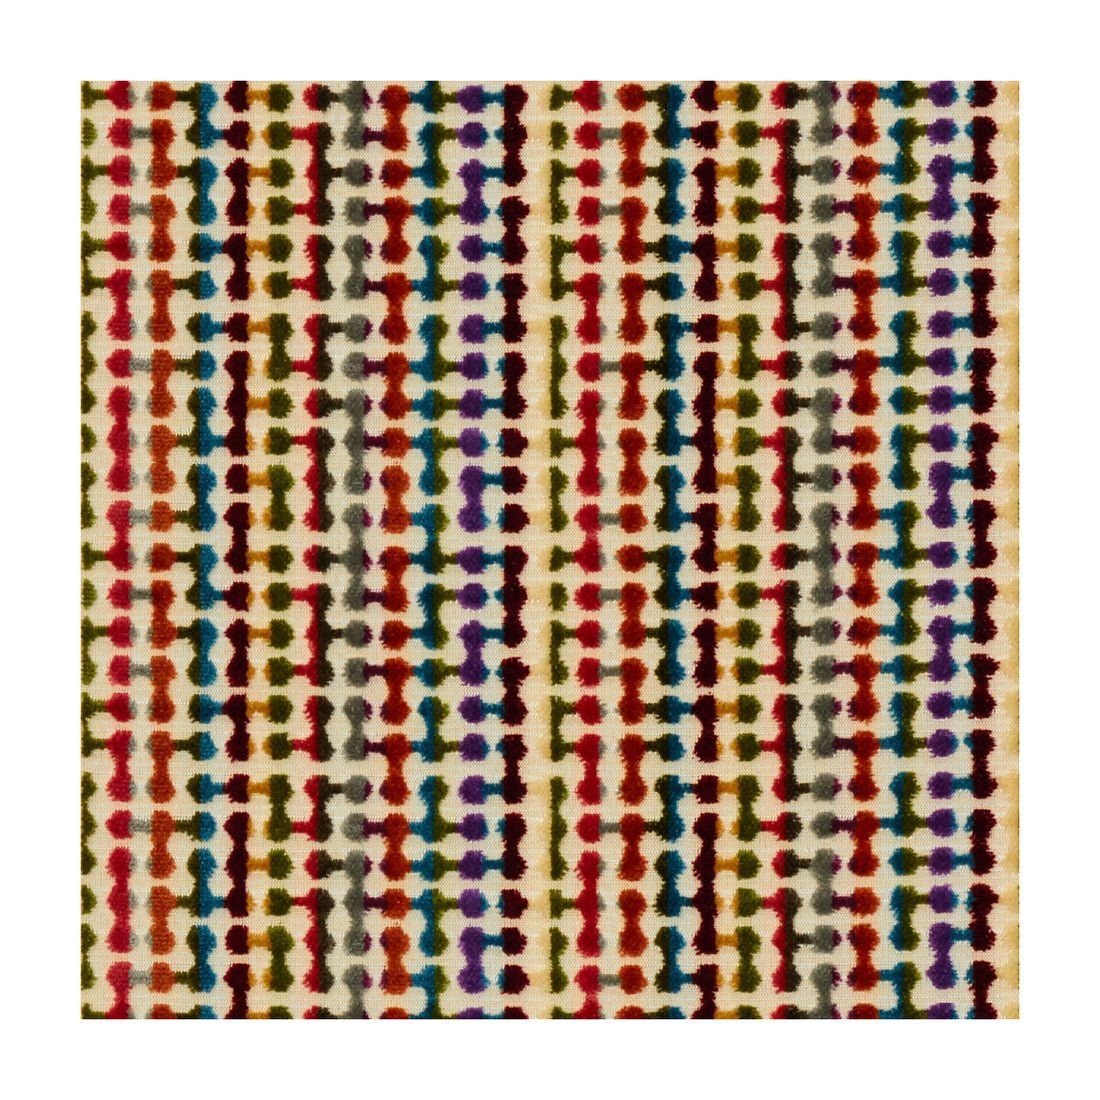 Kravet Design fabric in 34204-519 color - pattern 34204.519.0 - by Kravet Design